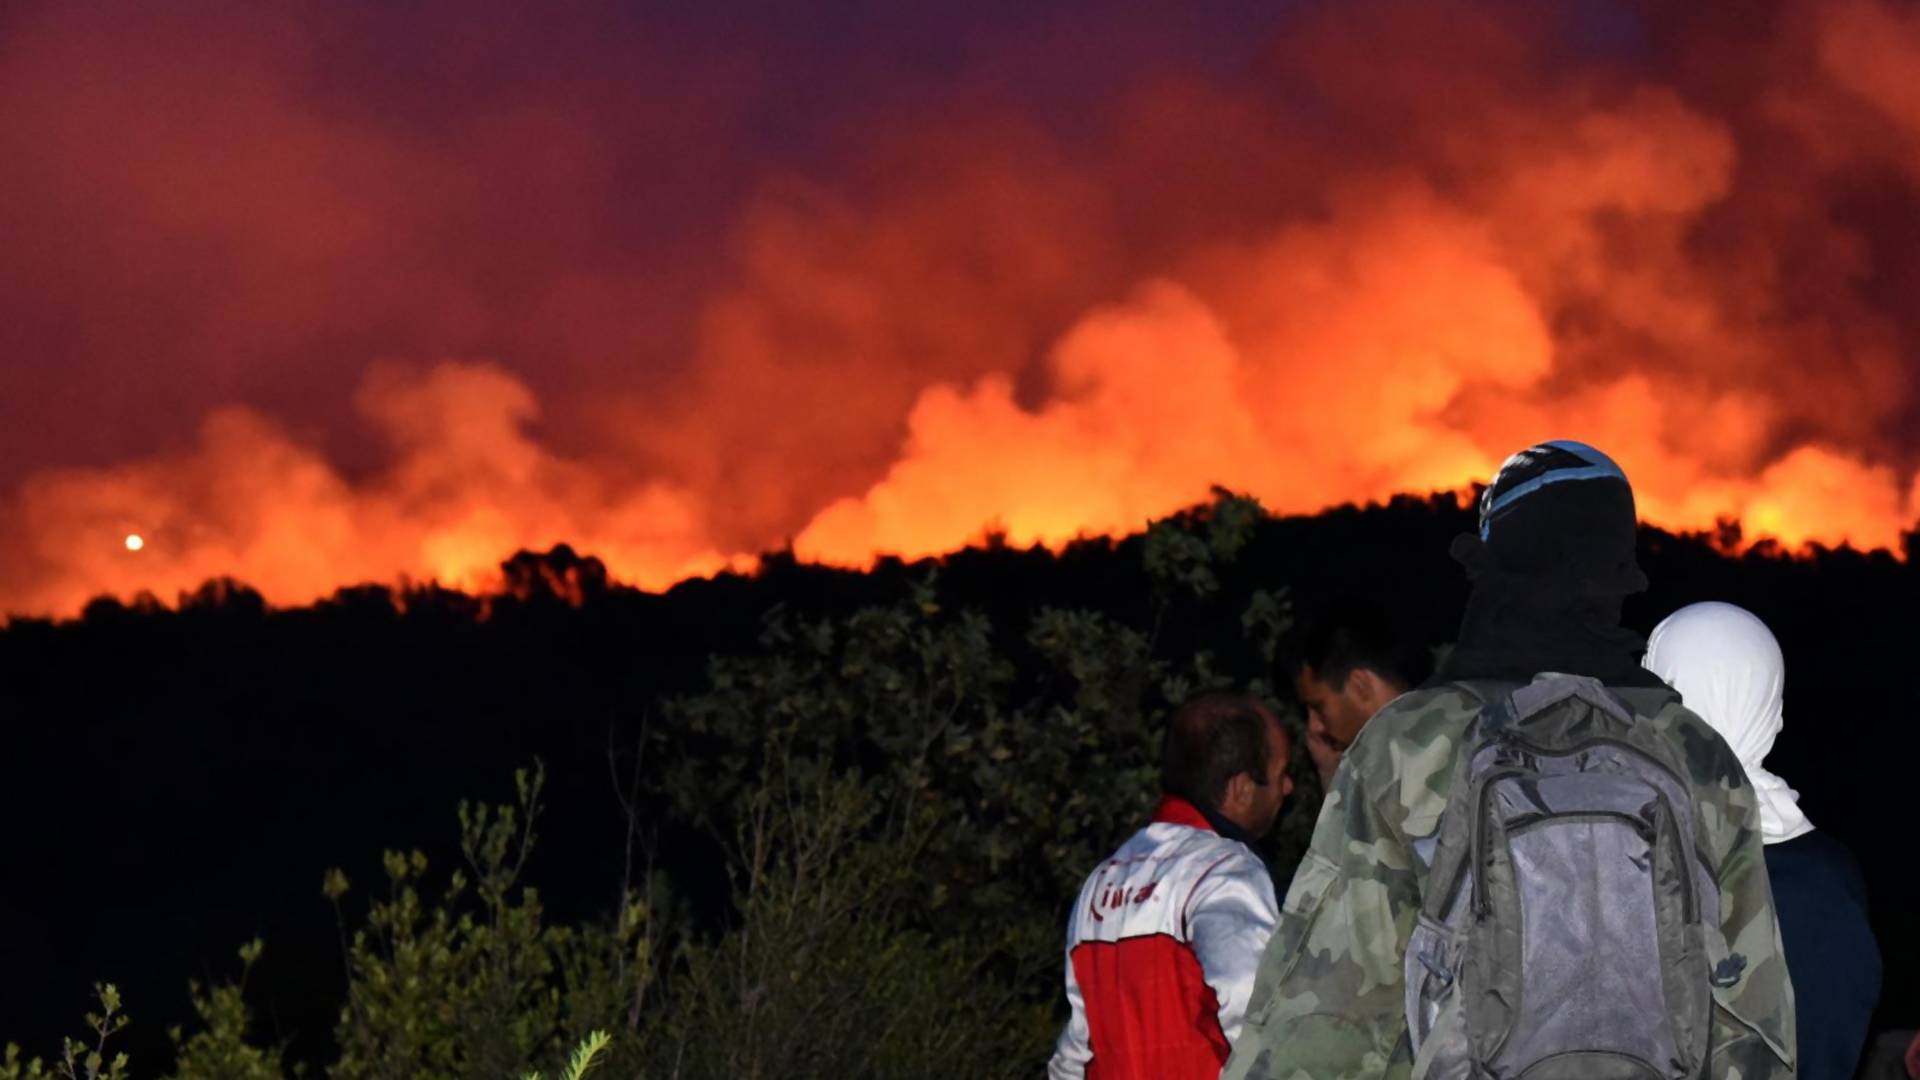 Moćna fotka hrabrog dobrovoljca koji gasi požar u Crnoj Gori osvaja internet